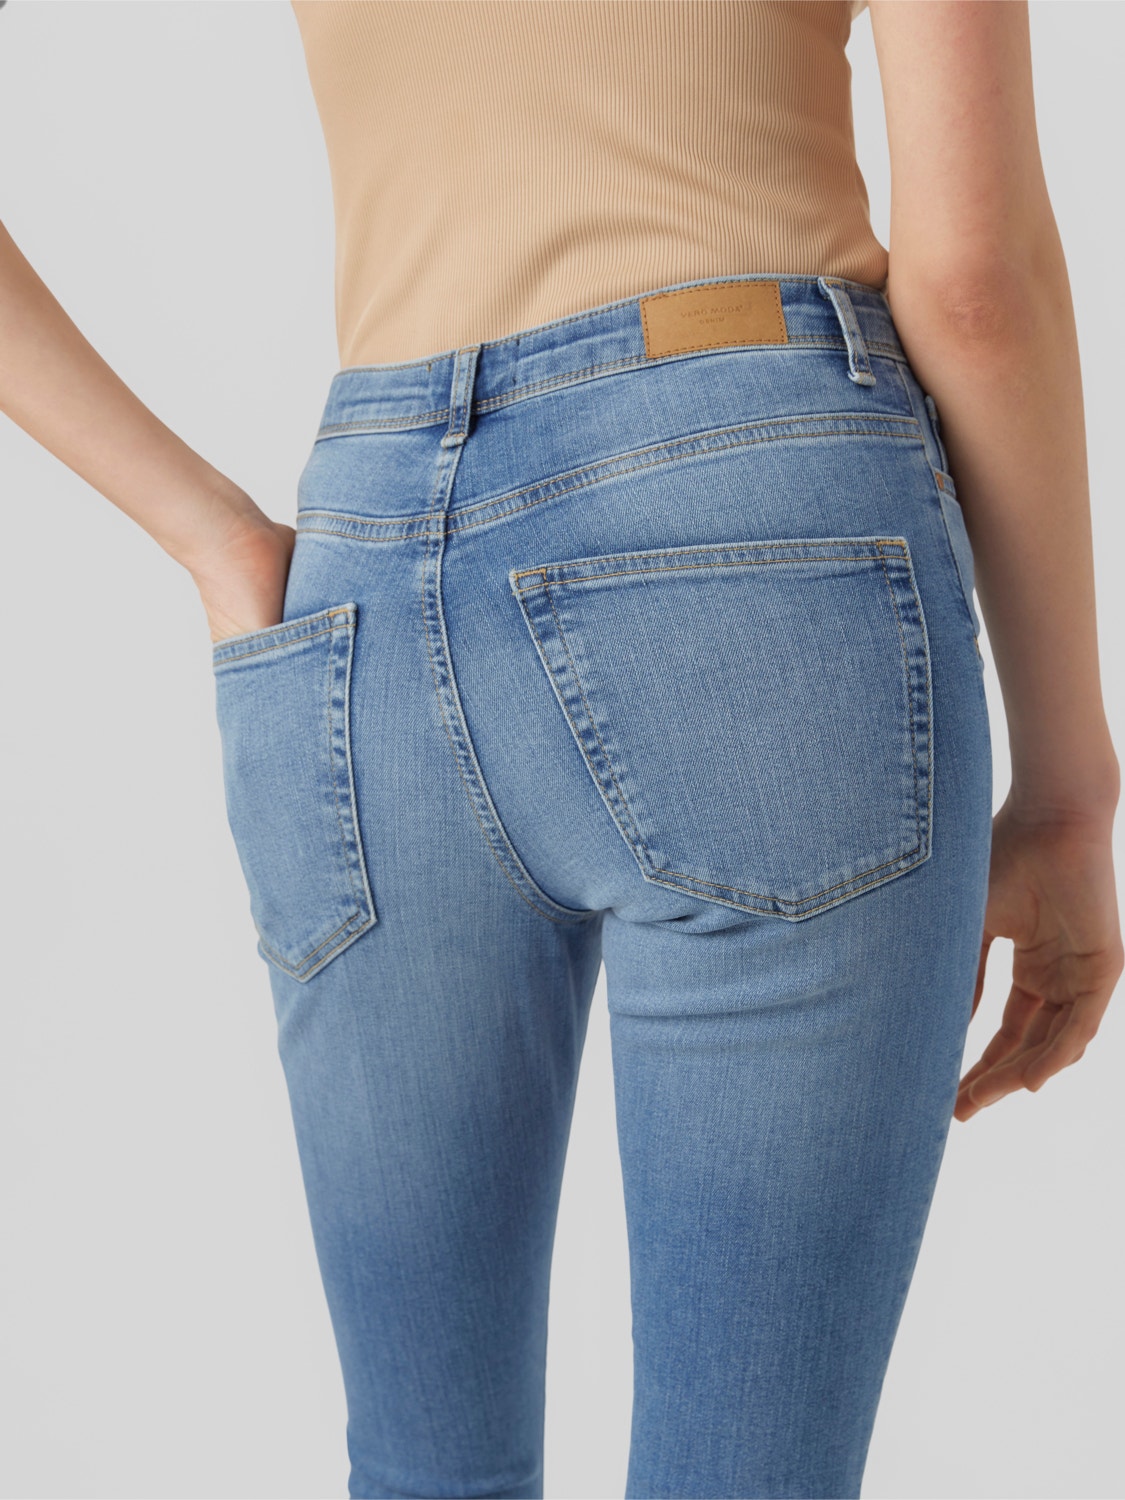 VMSOPHIA Jeans with 40% discount! | Vero Moda®